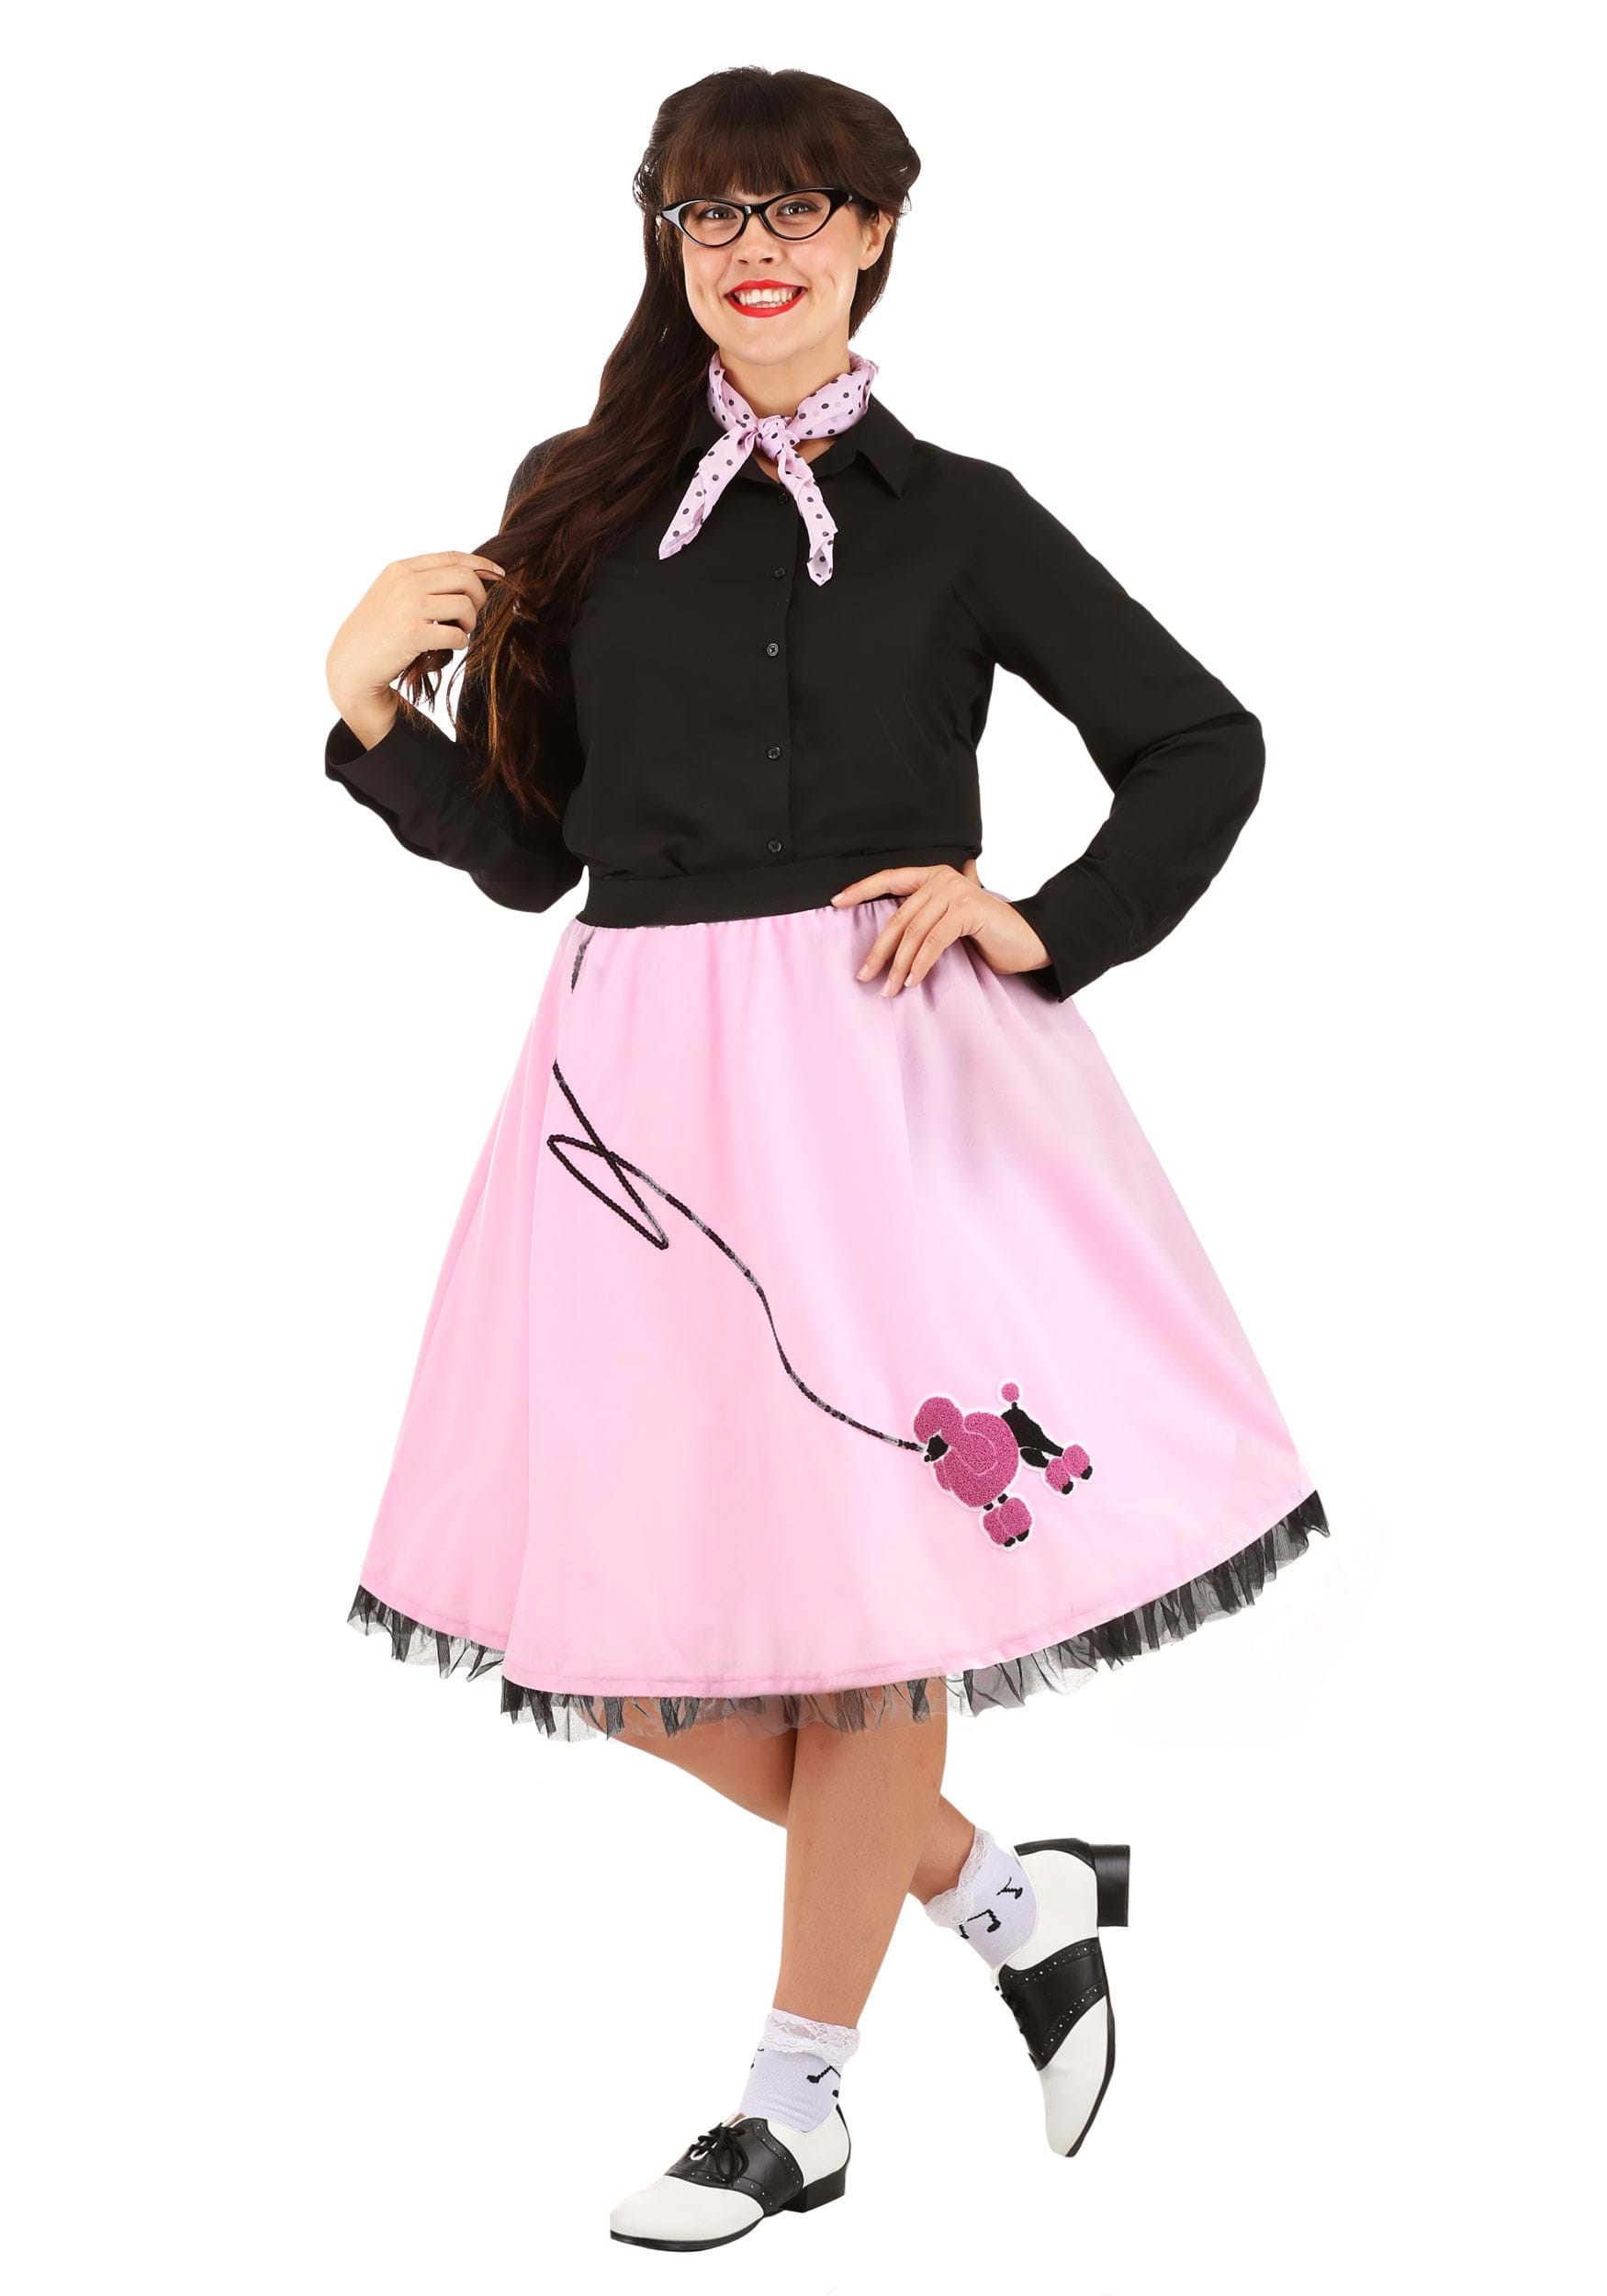 Poodle Skirts | Poodle Skirt Costumes, Patterns, History Plus Size Sock Hop Womens Kit $44.99 AT vintagedancer.com